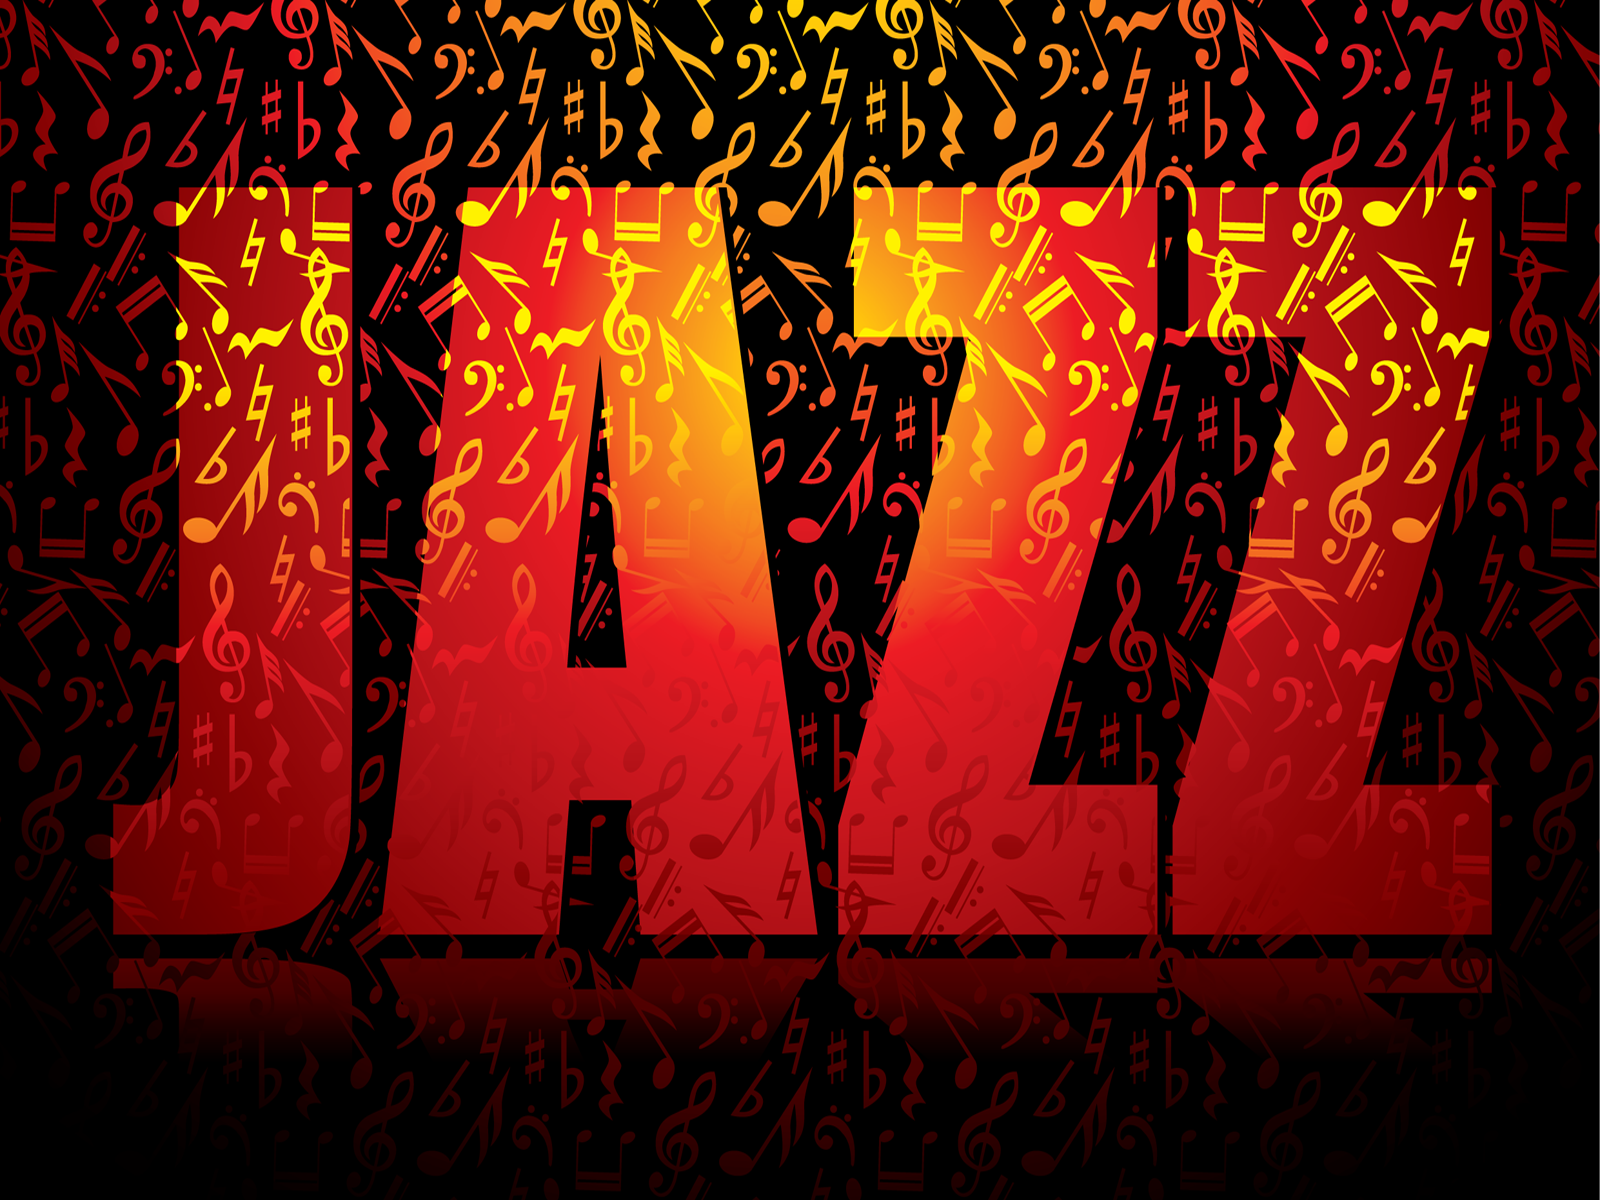 Paul Skerritt on Jazz Time